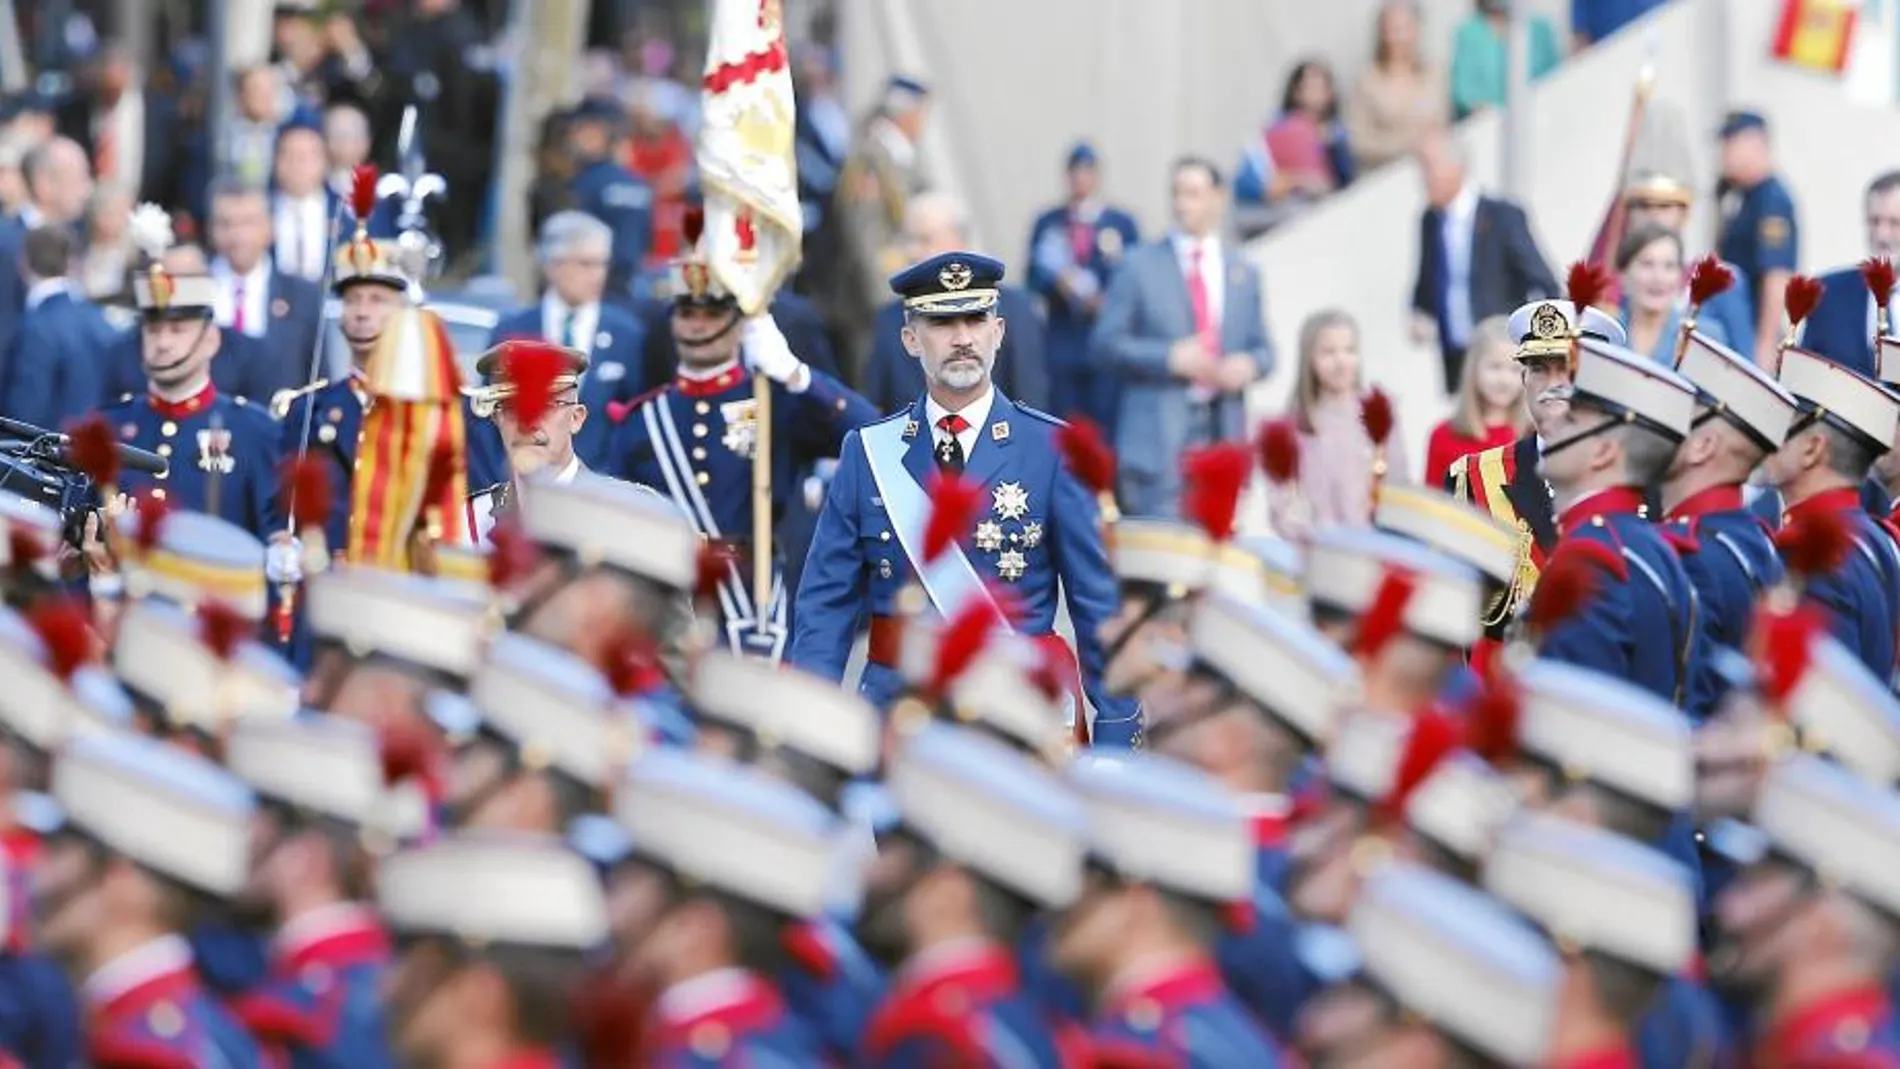 El Rey Felipe VI pasa revista a las tropas acompañado del Jemad, ayer durante el desfile del Día de la Hispanidad en Madrid